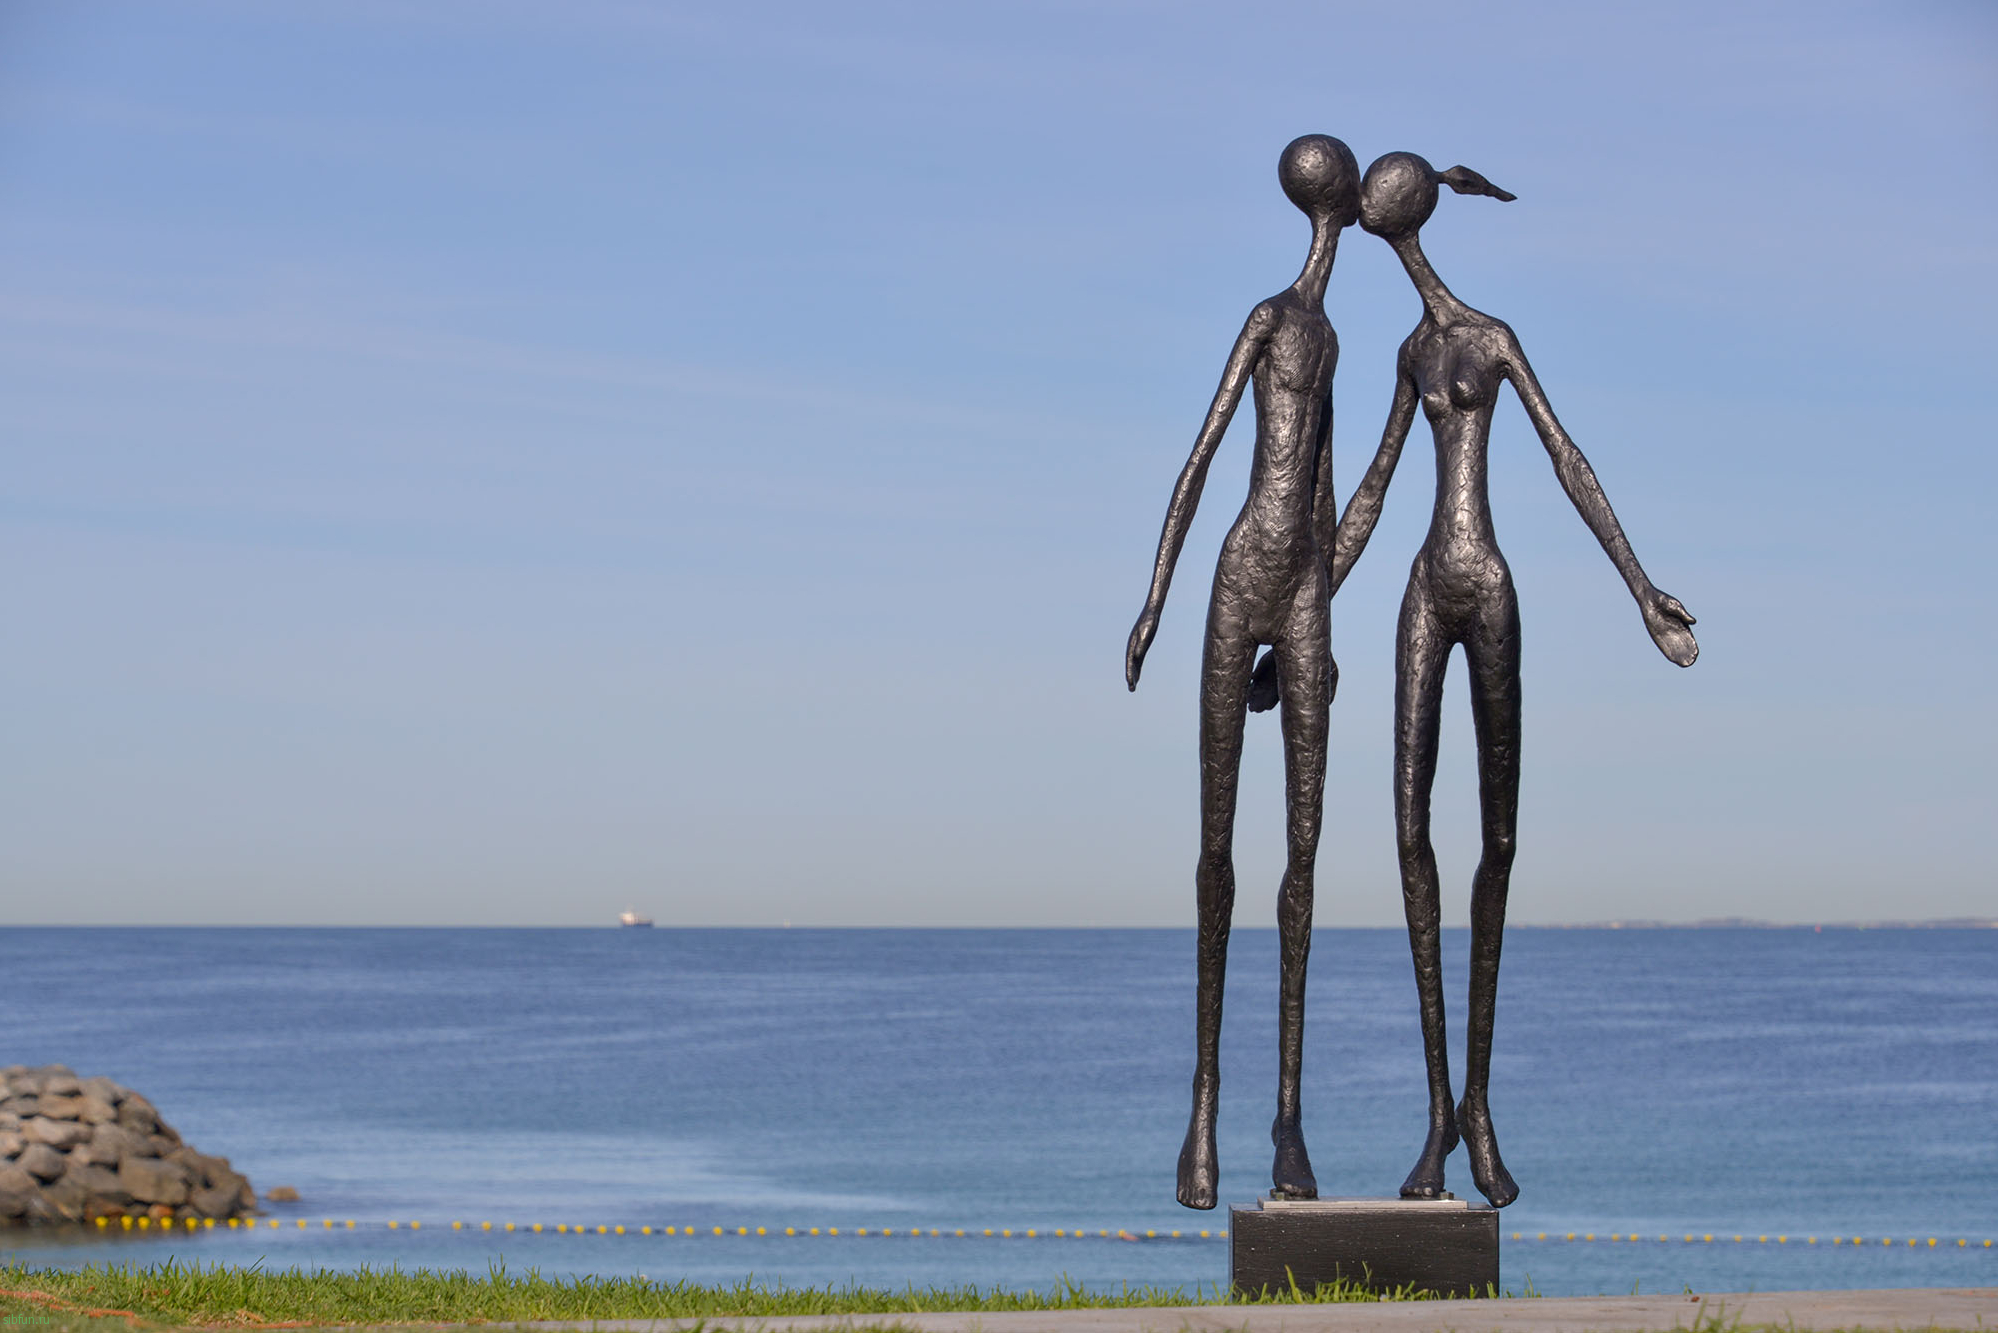 Фестиваль «Скульптура у моря» 2020 (Sculpture by the Sea) | Фестивали Австралии